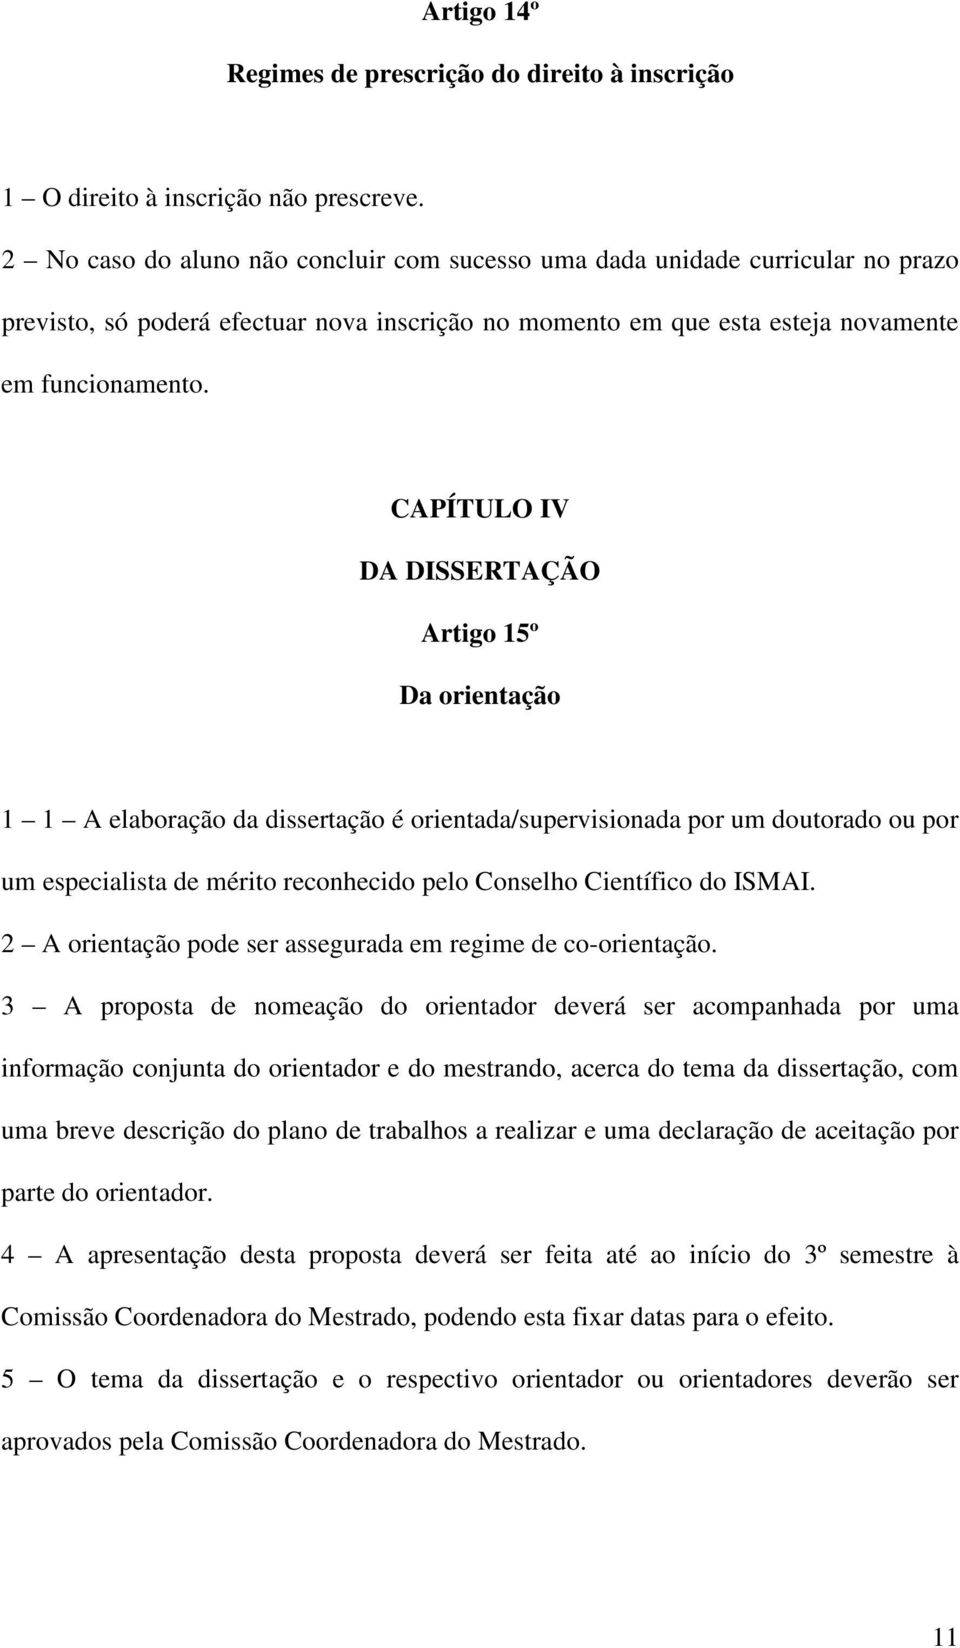 CAPÍTULO IV DA DISSERTAÇÃO Artigo 15º Da orientação 1 1 A elaboração da dissertação é orientada/supervisionada por um doutorado ou por um especialista de mérito reconhecido pelo Conselho Científico